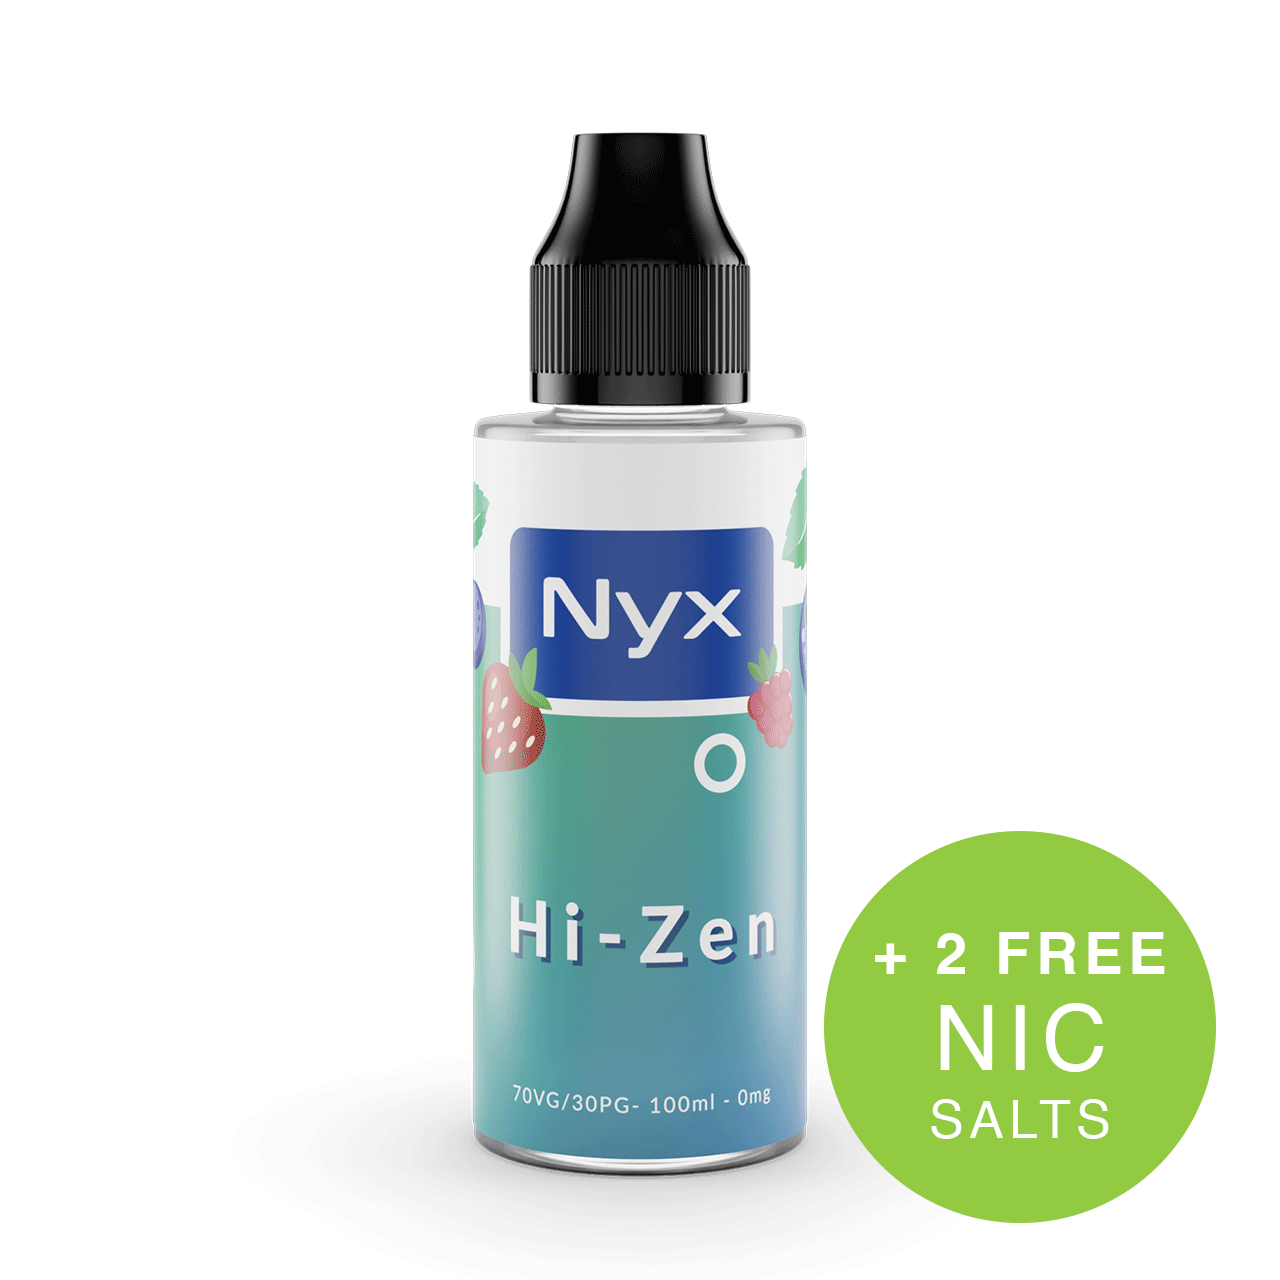 Nyx Hi-Zen Heisenberg Shortfill E-Liquid 100ml